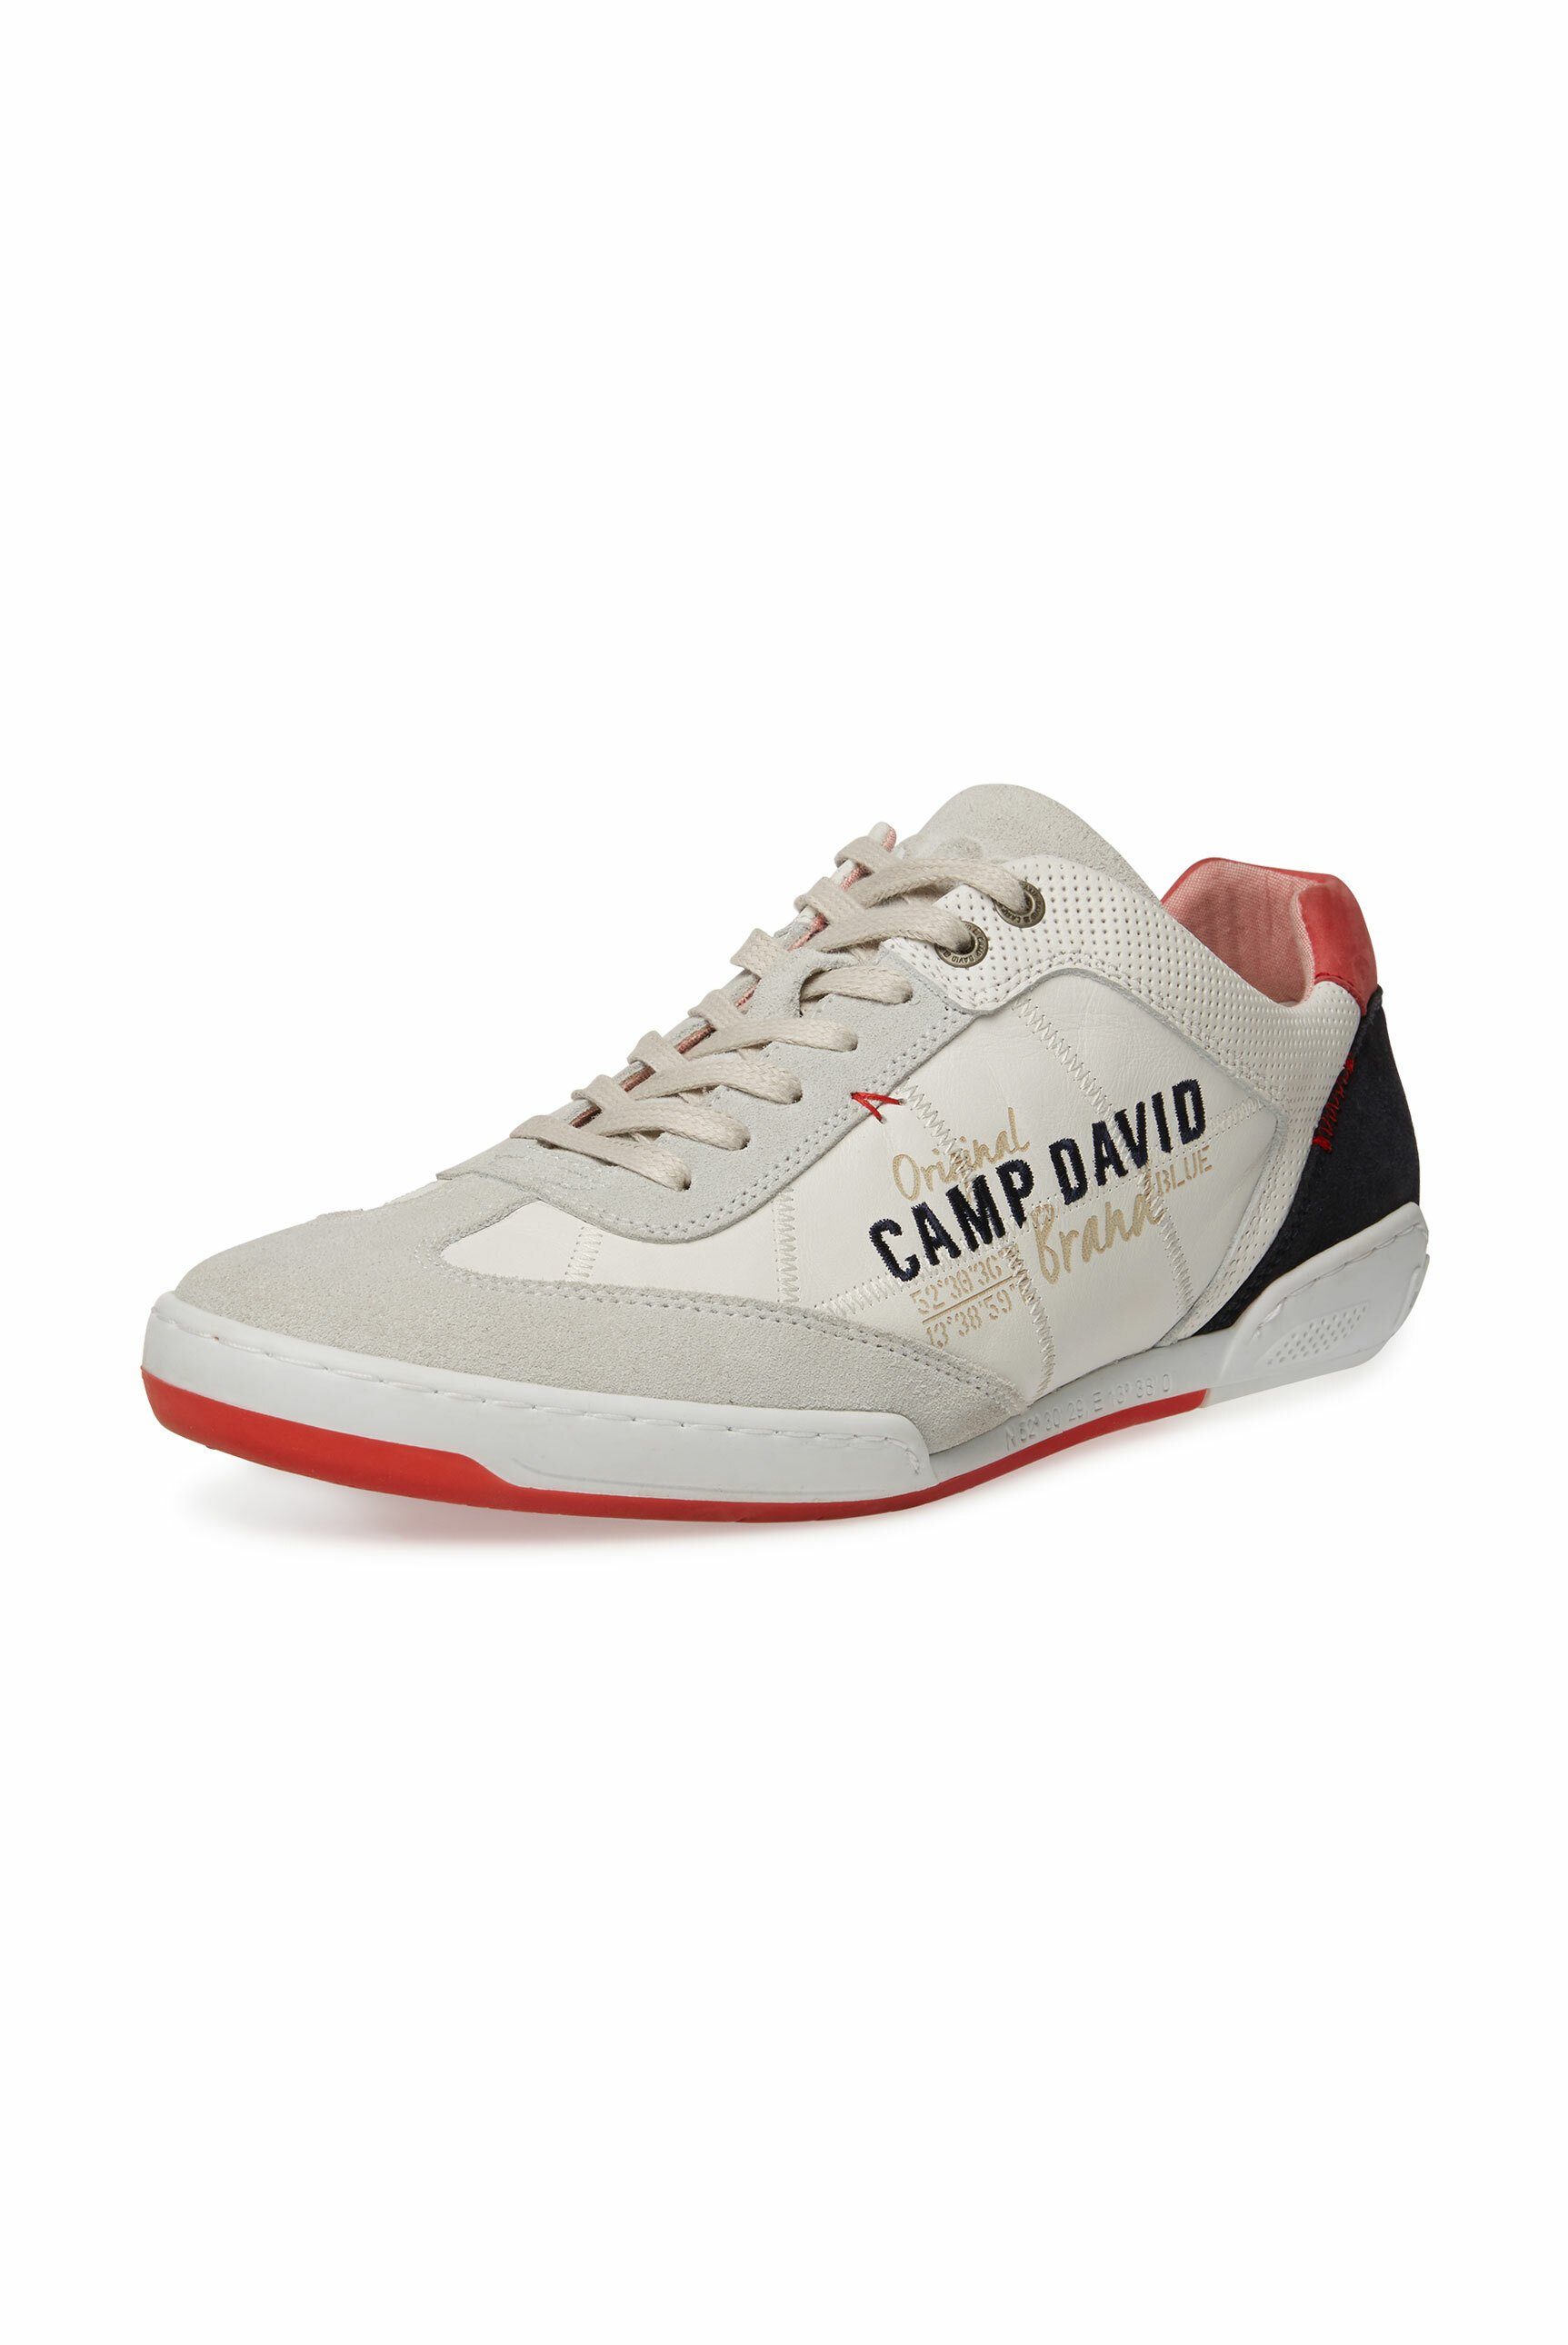 CAMP DAVID Sneaker aus Leder, Gepolsteter Einschlupf online kaufen | OTTO